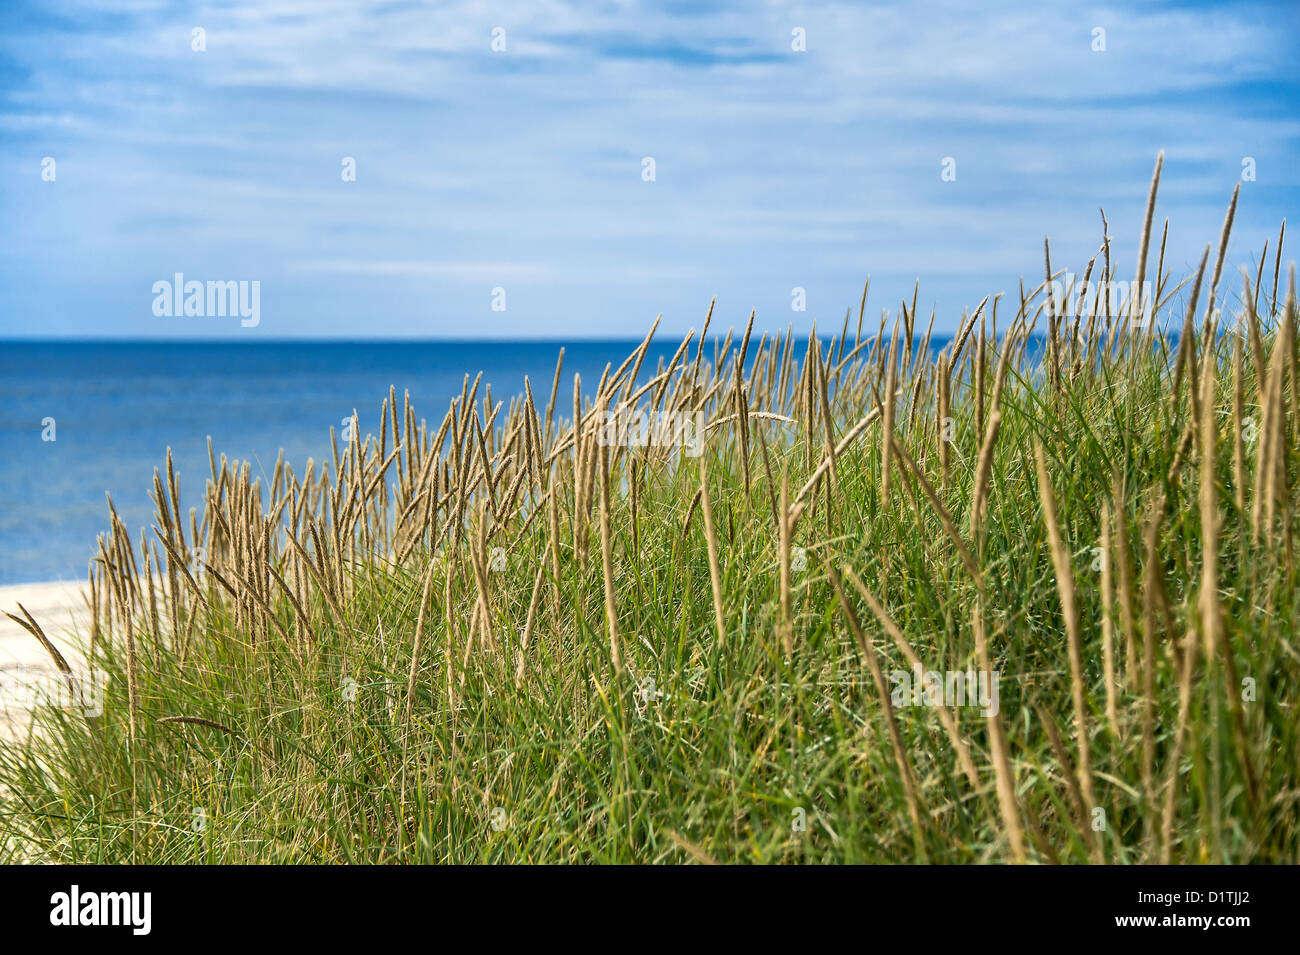 Dune grass and beach. Stock Photo